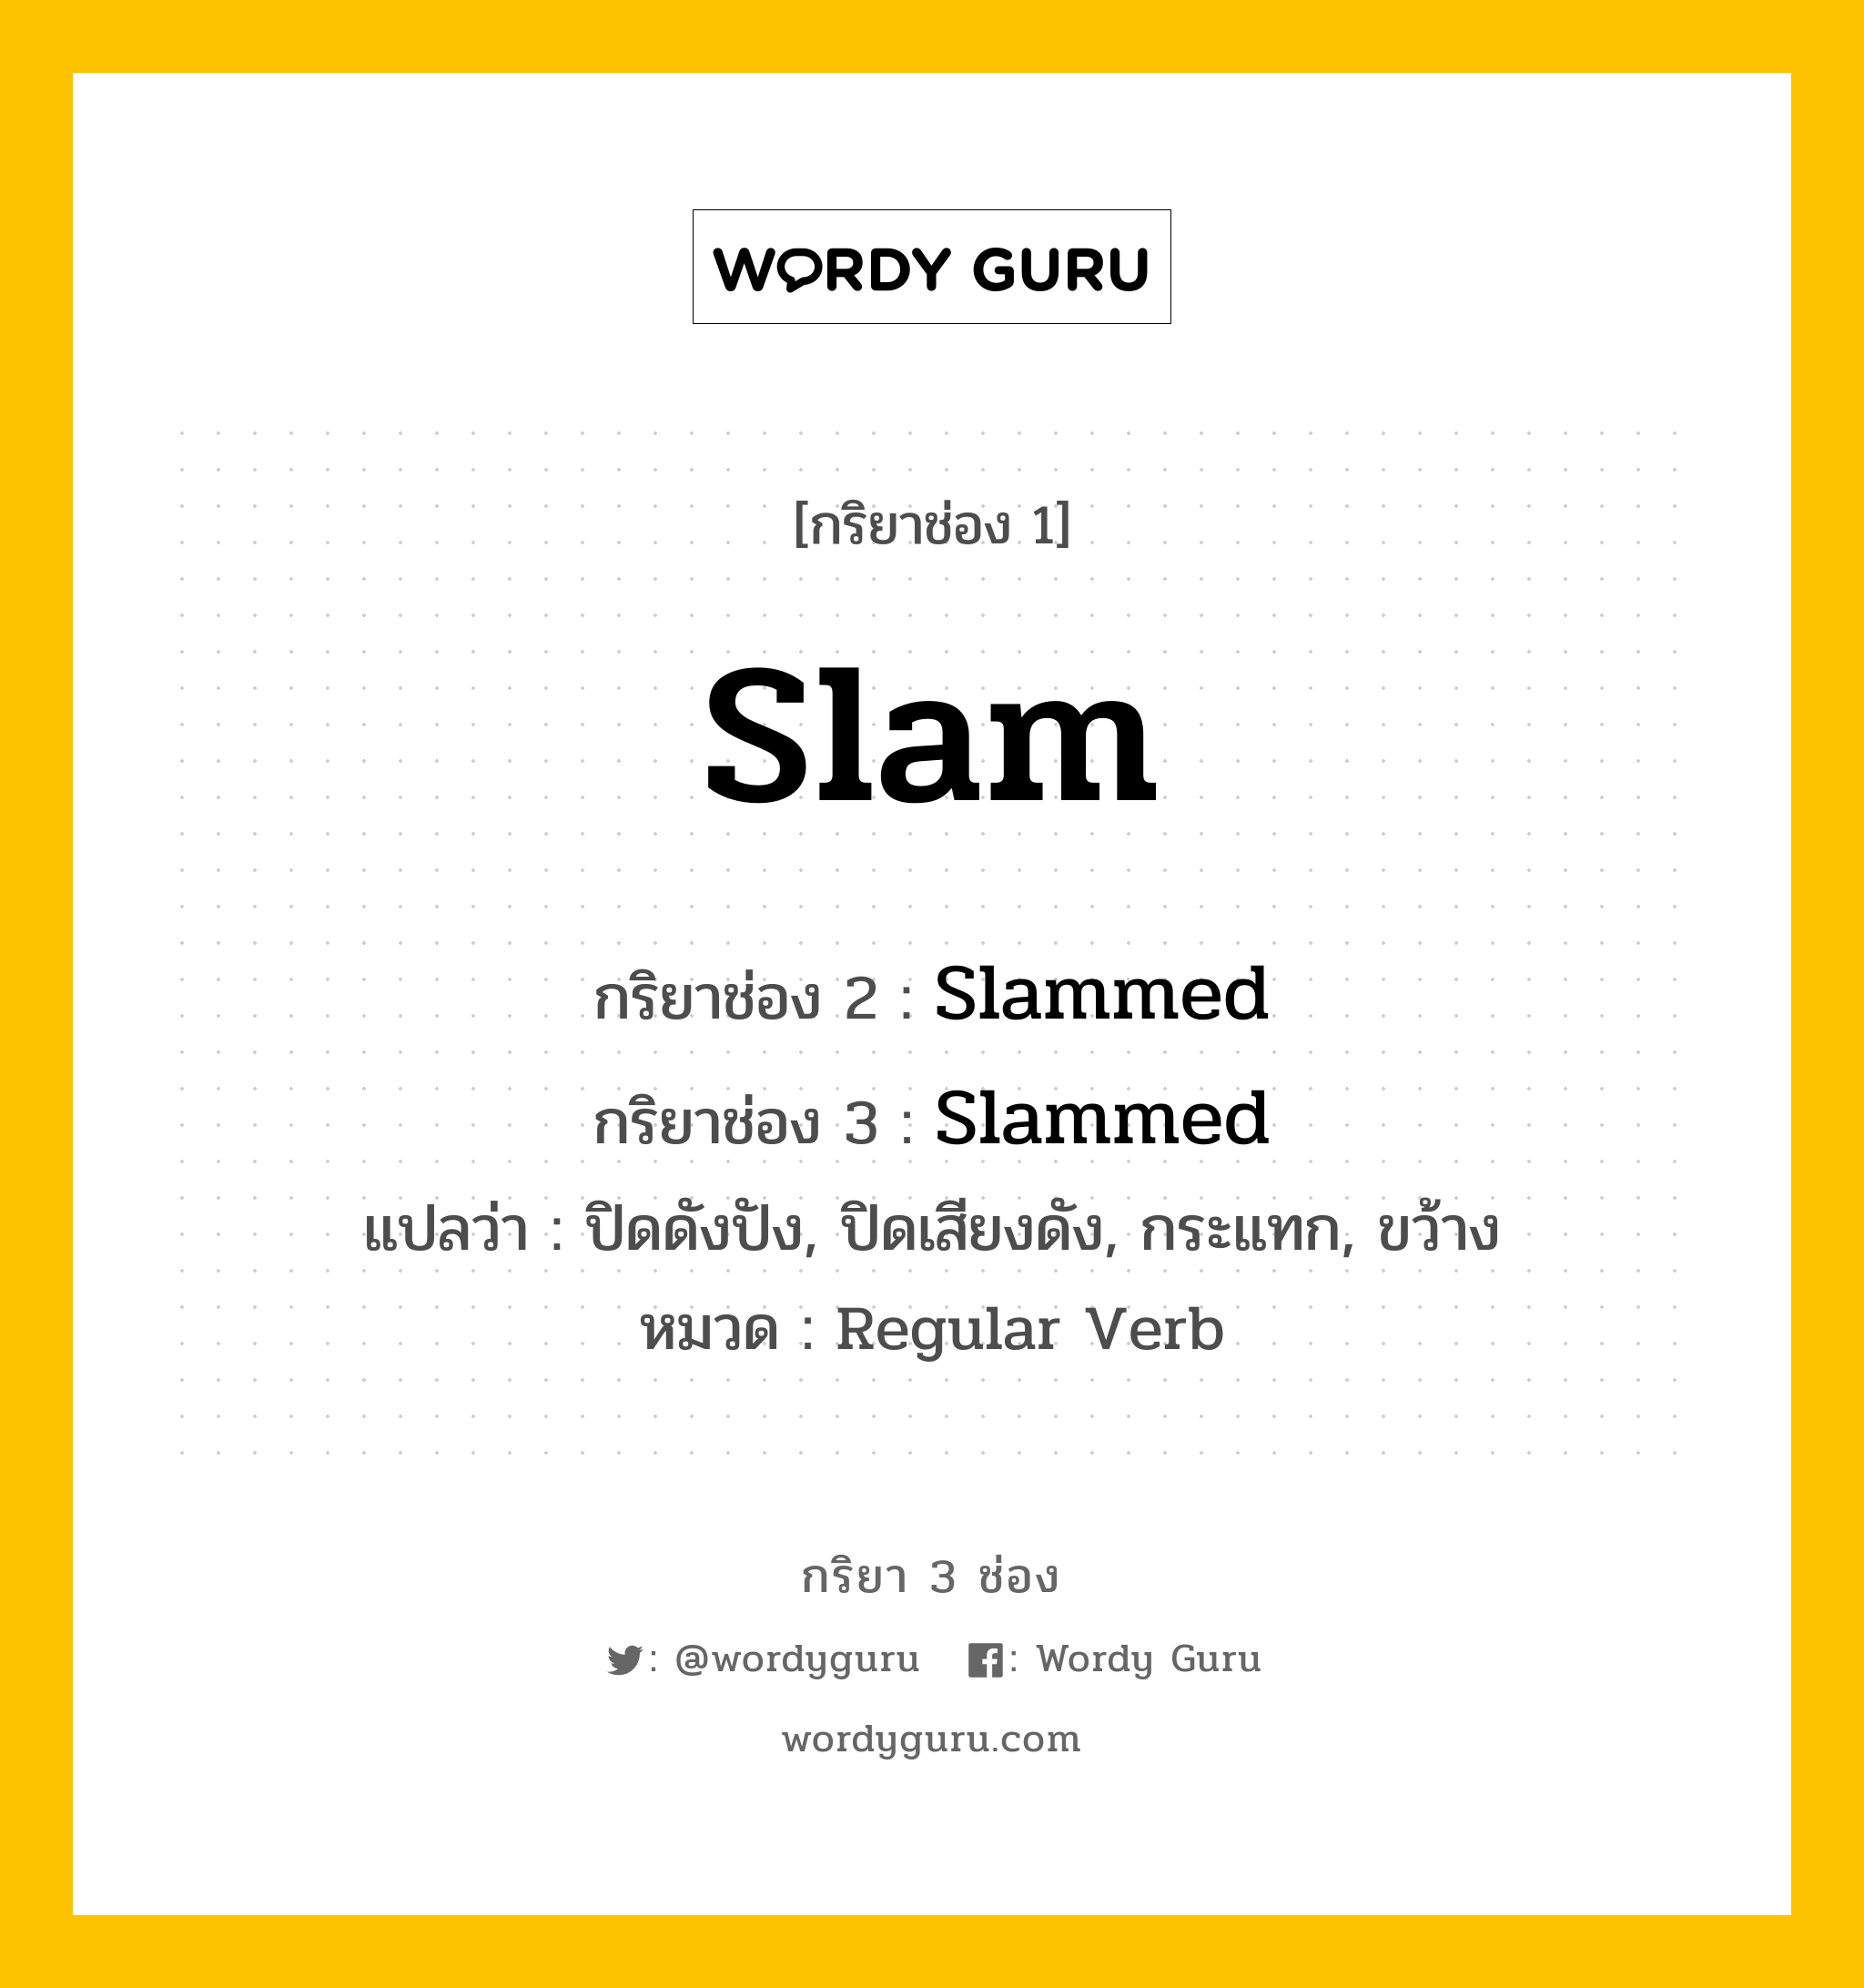 กริยา 3 ช่อง ของ Slam คืออะไร? มาดูคำอ่าน คำแปลกันเลย, กริยาช่อง 1 Slam กริยาช่อง 2 Slammed กริยาช่อง 3 Slammed แปลว่า ปิดดังปัง, ปิดเสียงดัง, กระแทก, ขว้าง หมวด Regular Verb หมวด Regular Verb